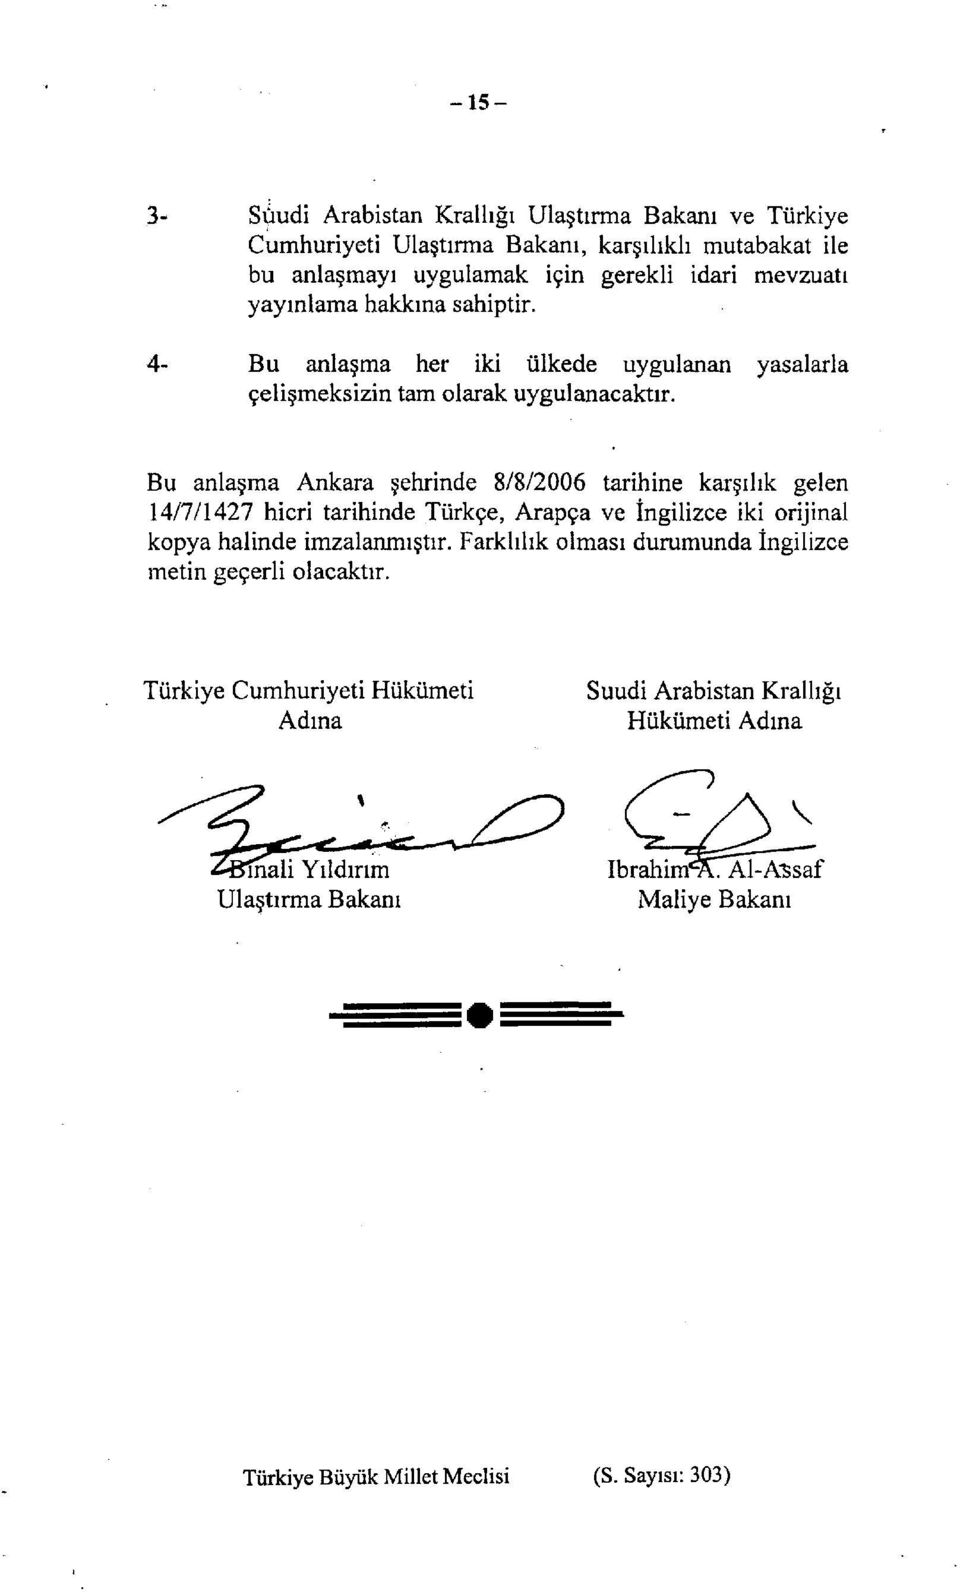 Bu anlaşma Ankara şehrinde 8/8/2006 tarihine karşılık gelen 14/7/1427 hicri tarihinde Türkçe, Arapça ve İngilizce iki orijinal kopya halinde